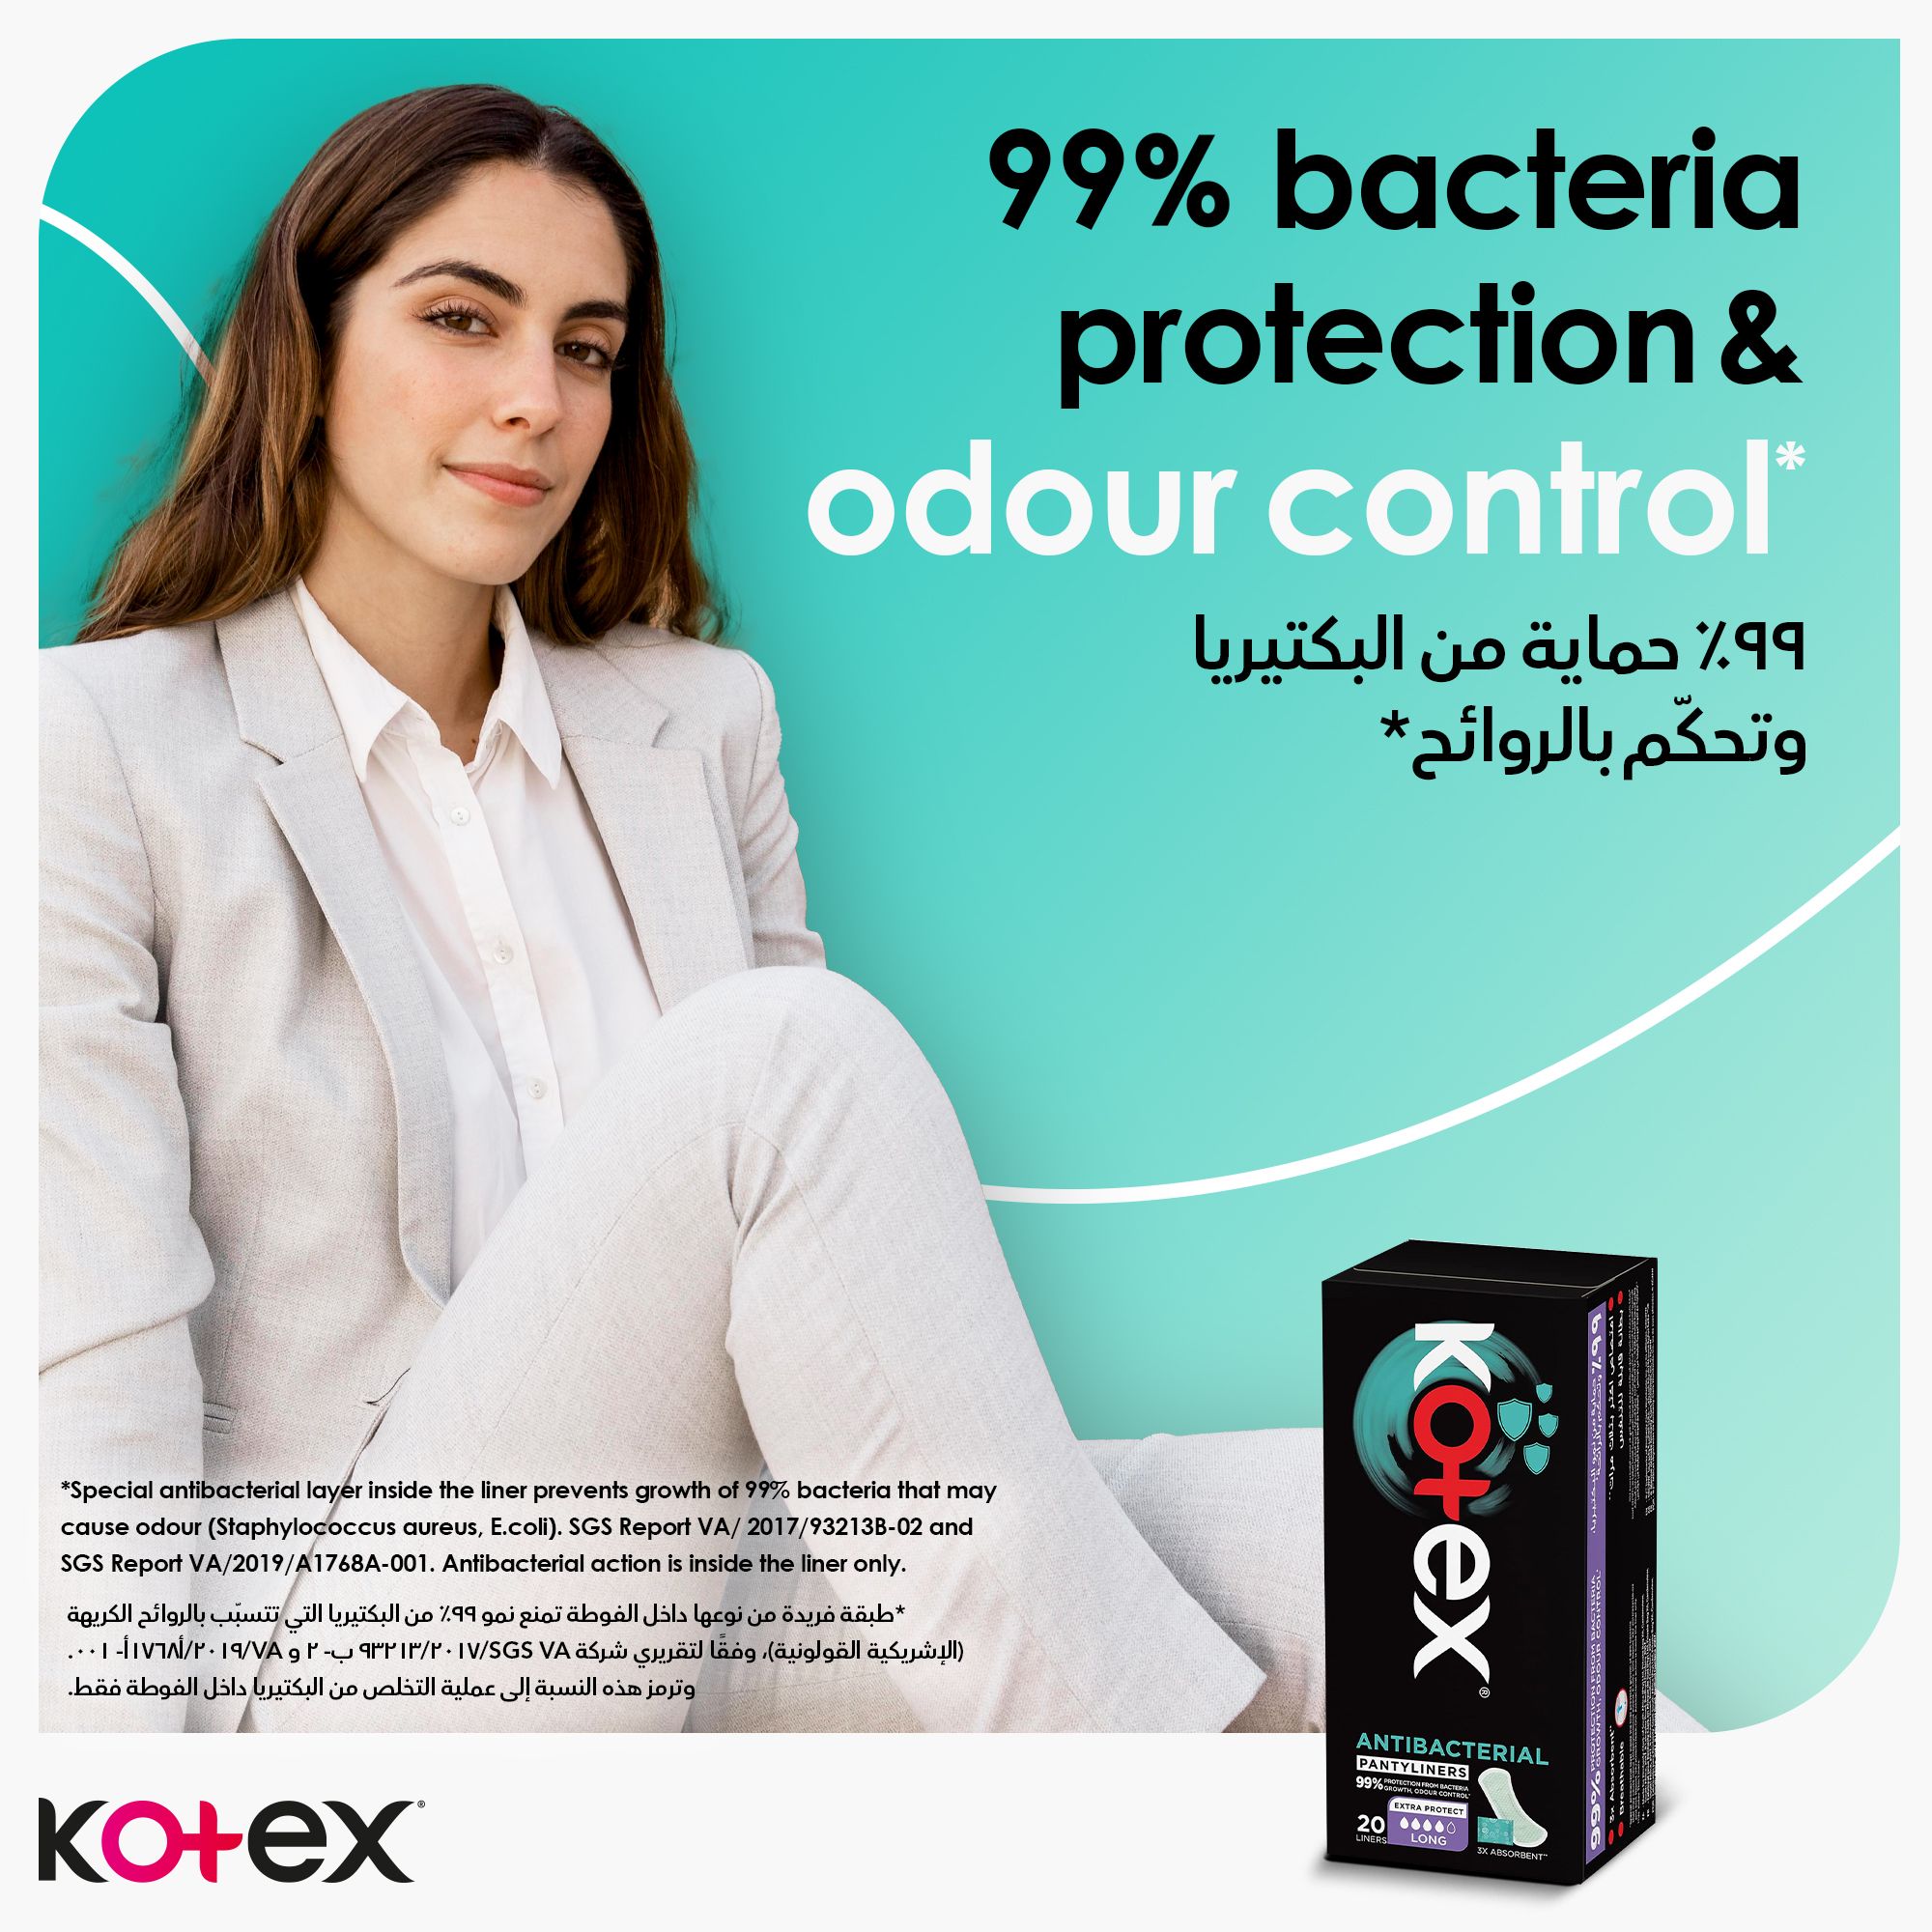 فوط كوتكس اليومية المضادة للبكتيريا، حماية من نمو البكتيريا بنسبة 99%، 20 فوطة صحية يومية